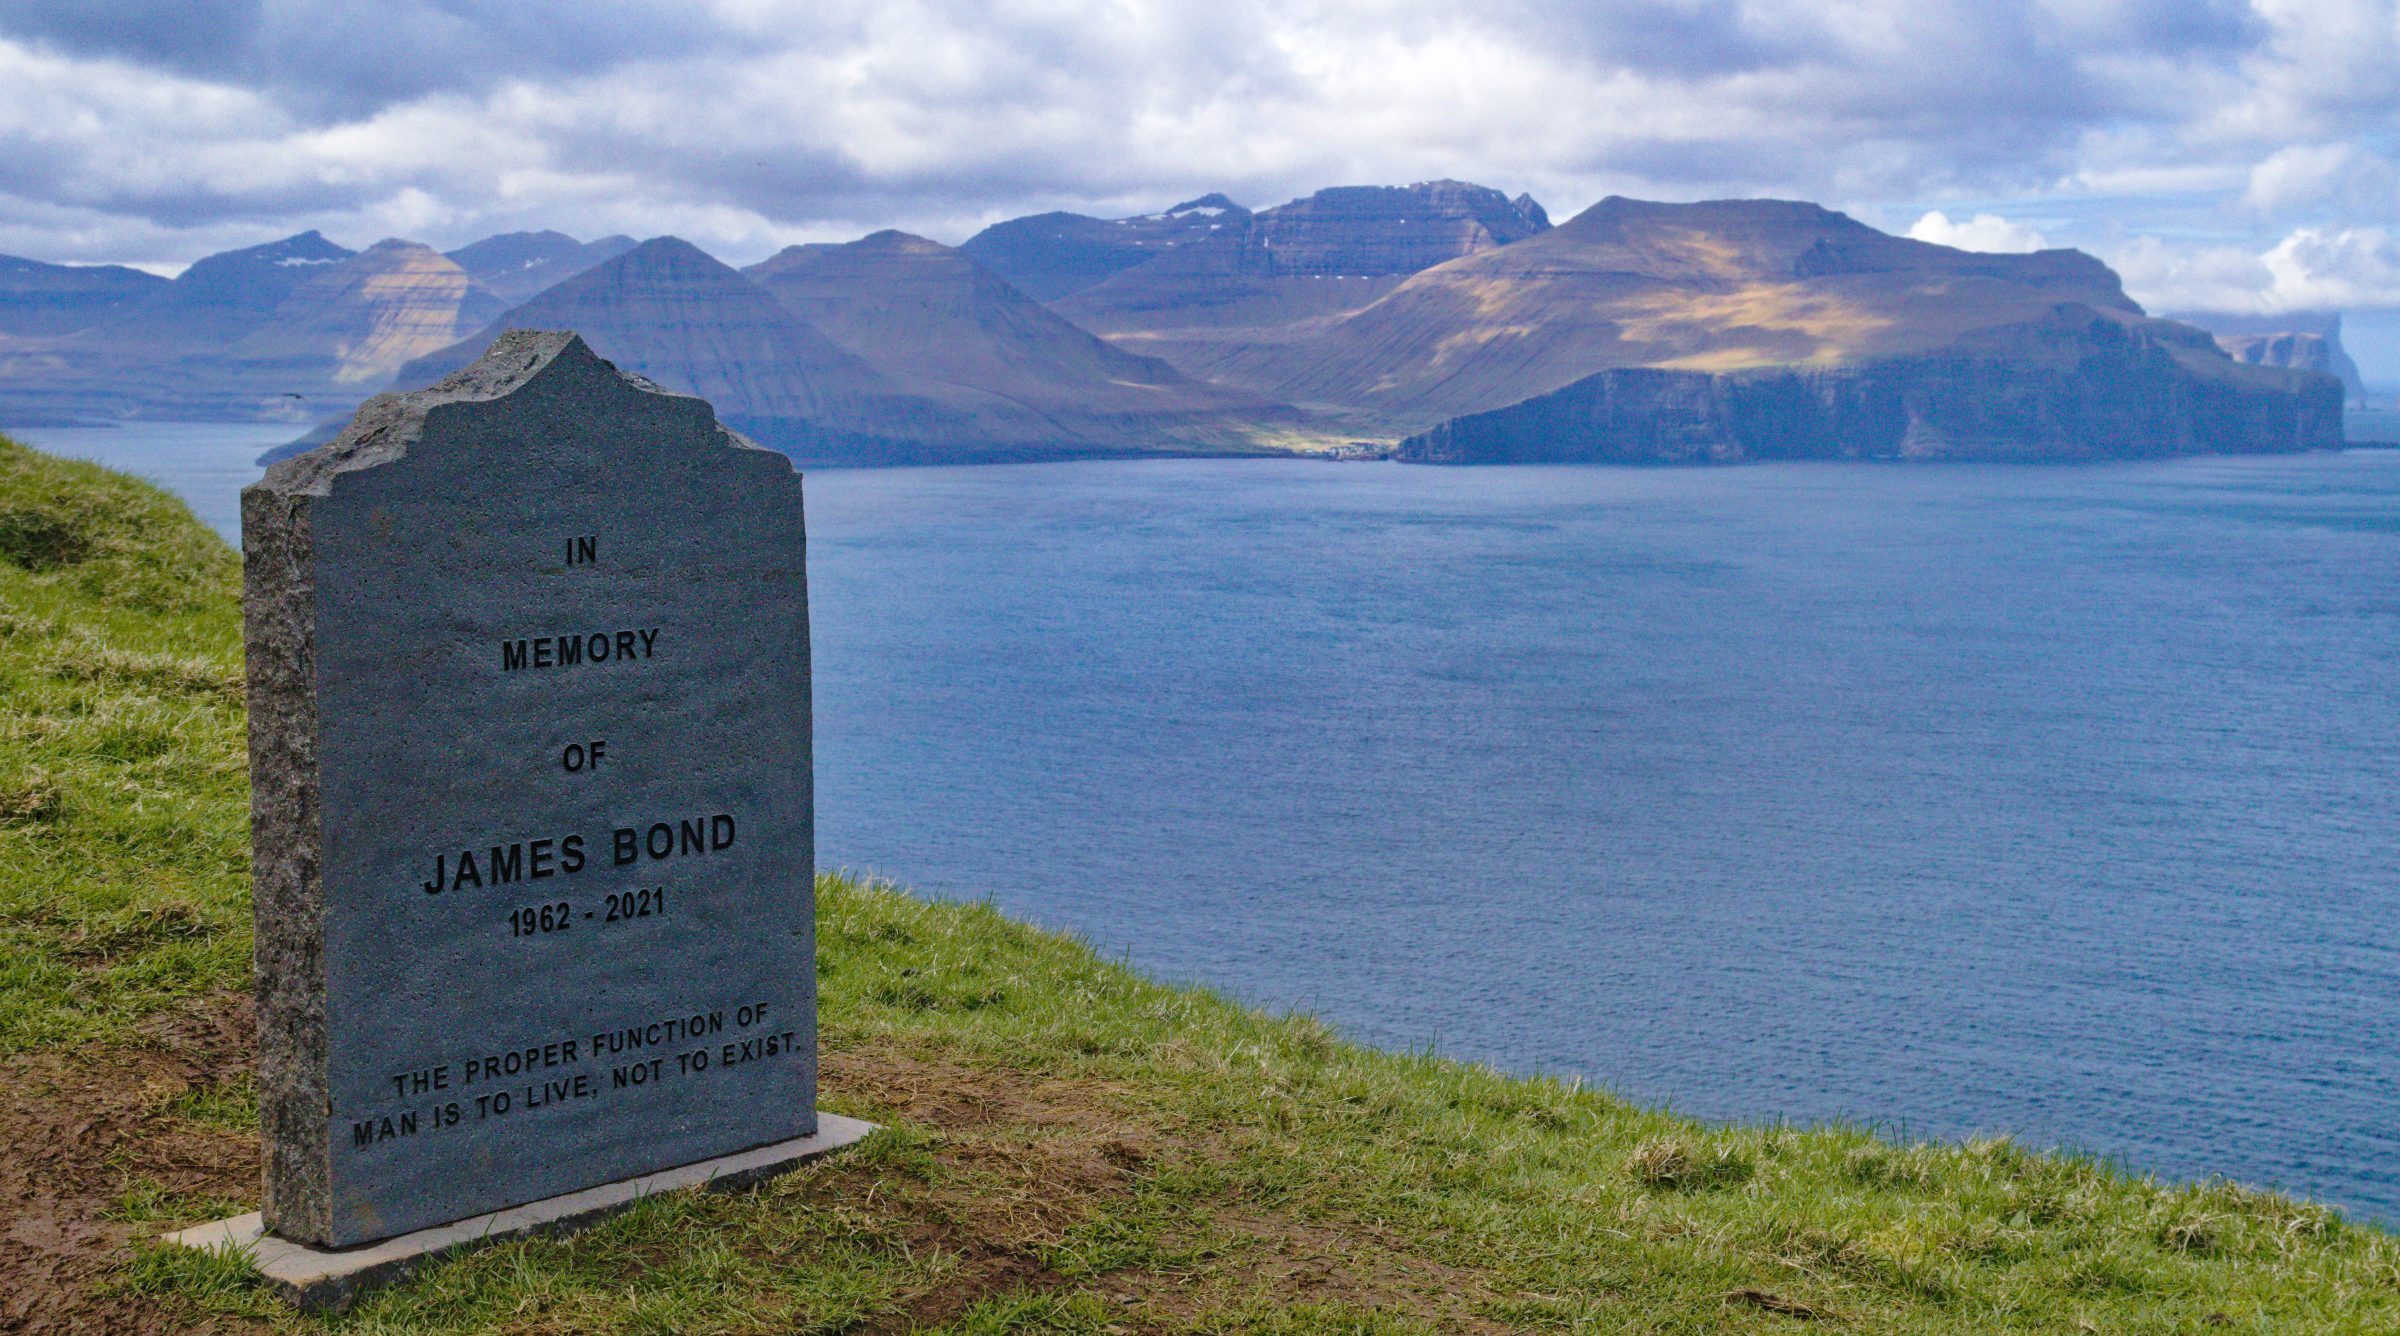 Lapide commemorativa di James Bond nelle Isole Faroe